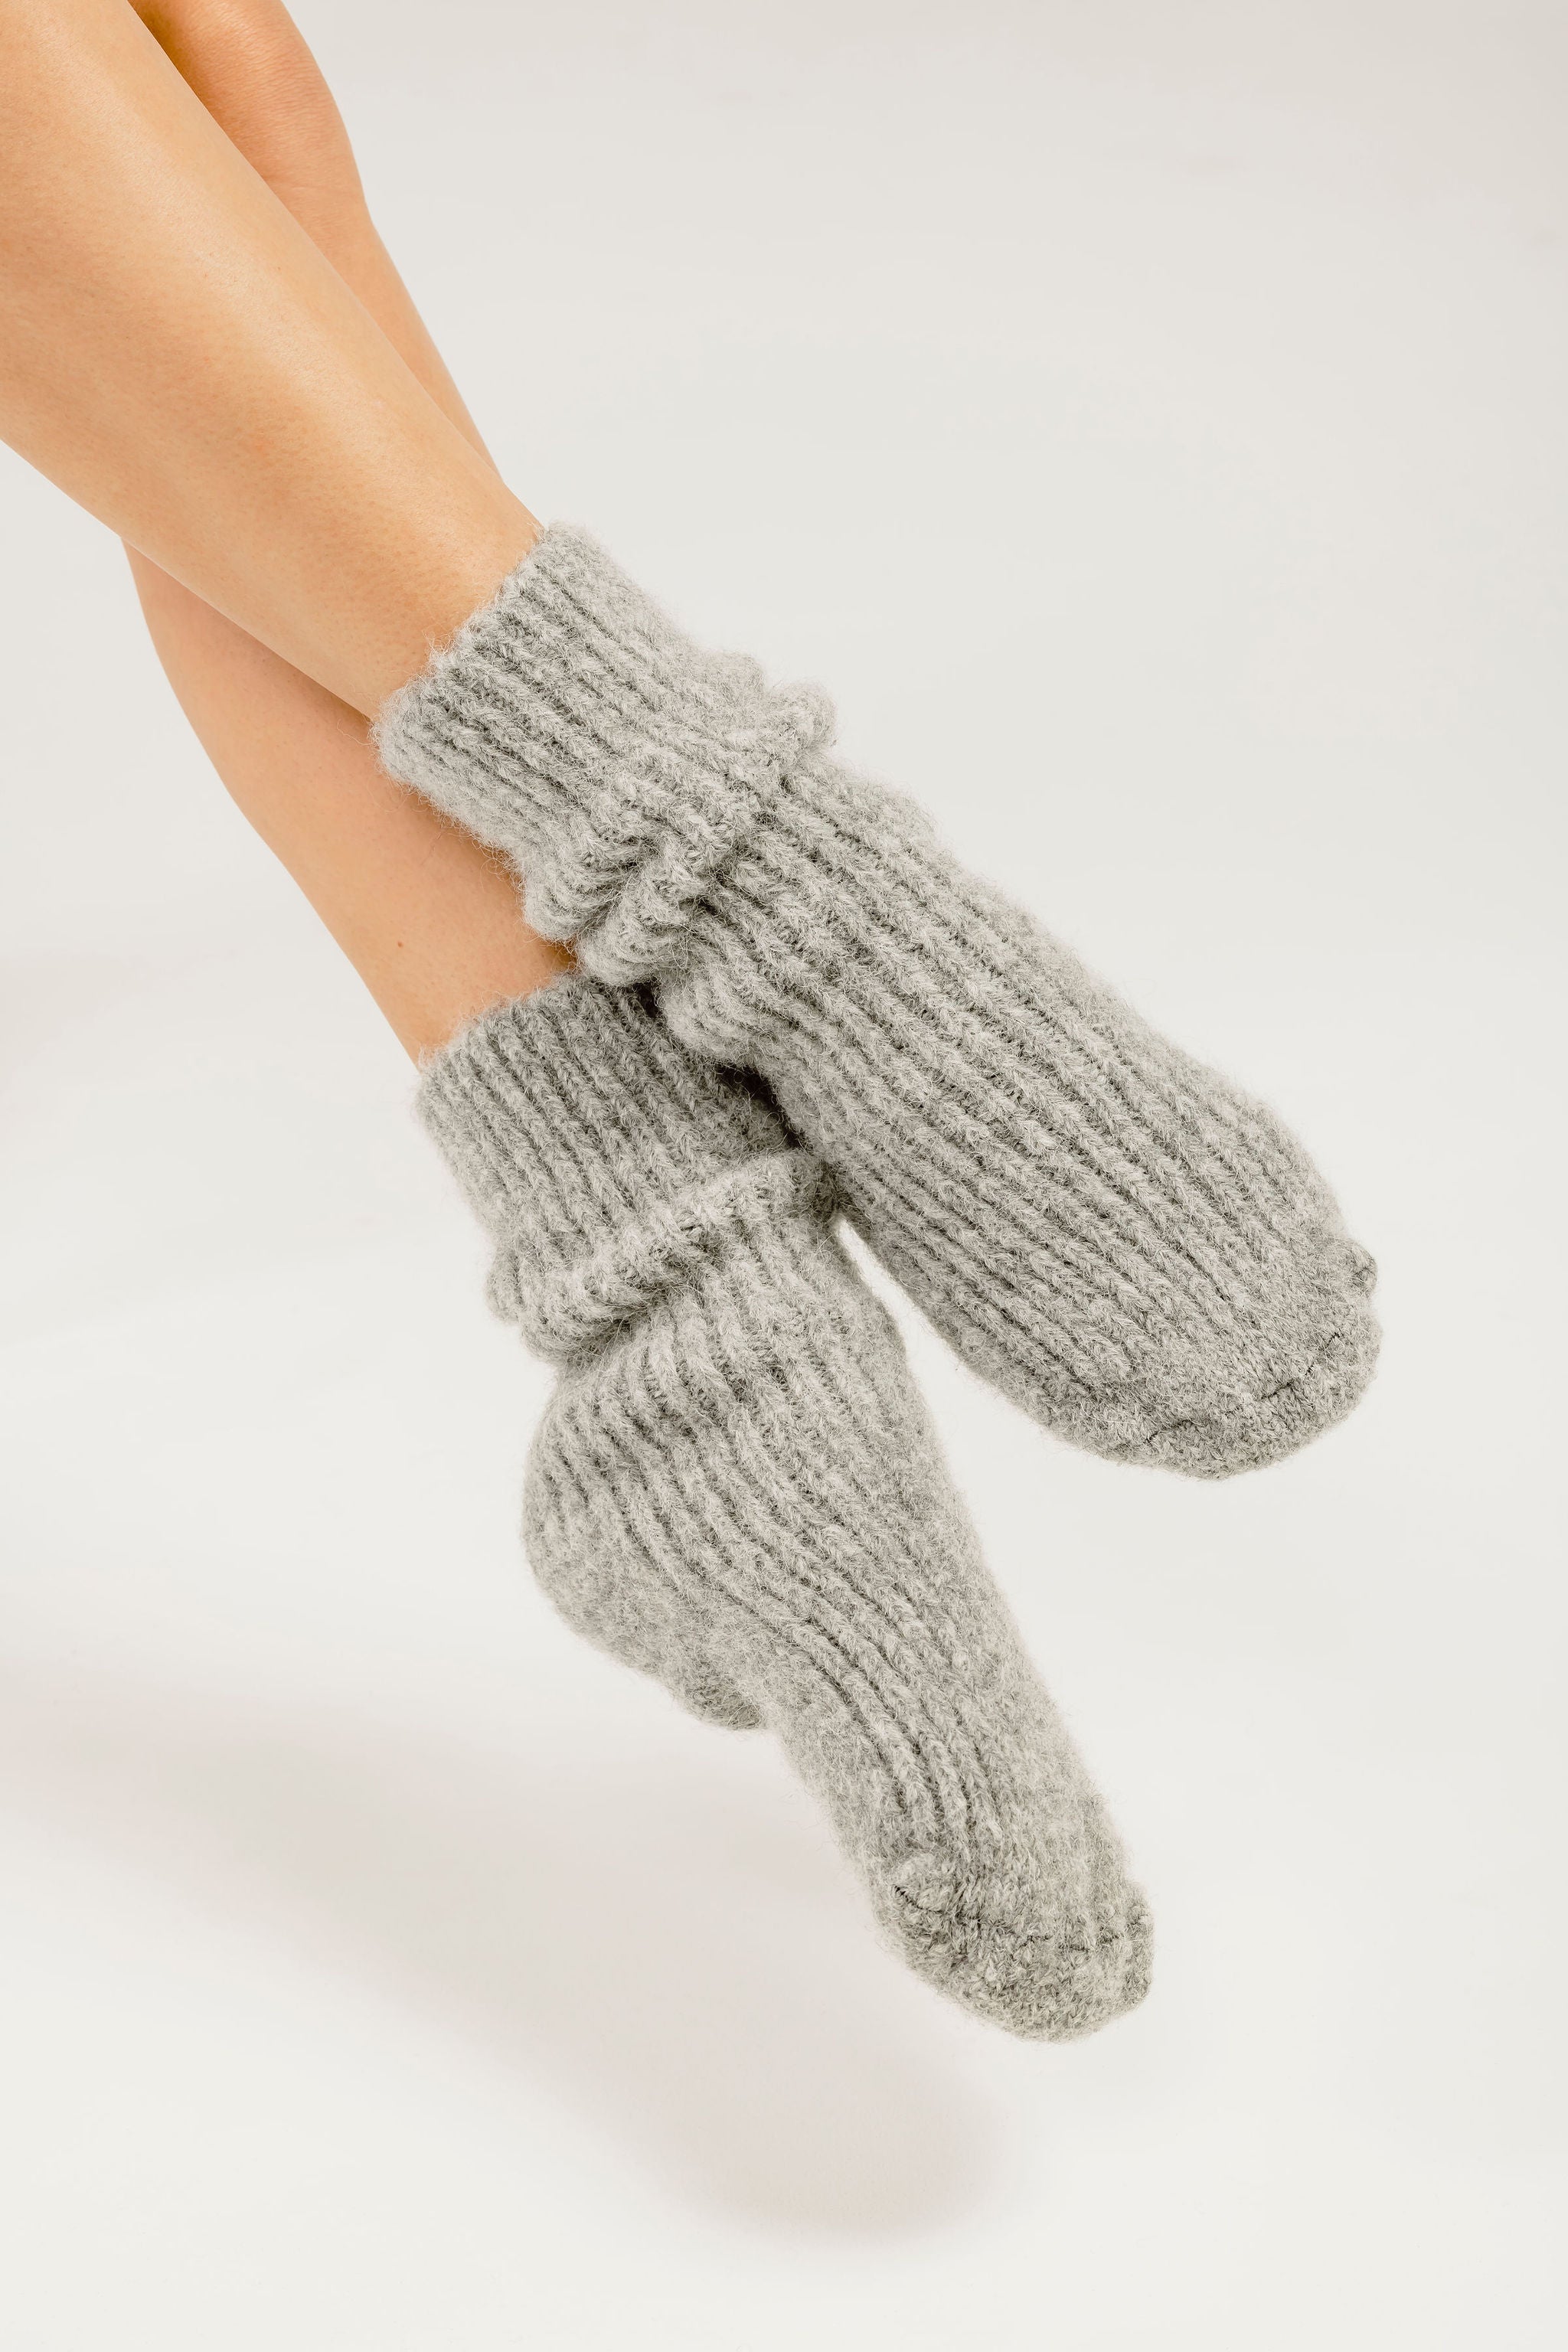 Alpaca wool socks - slipper socks - bed socks Kapeka 